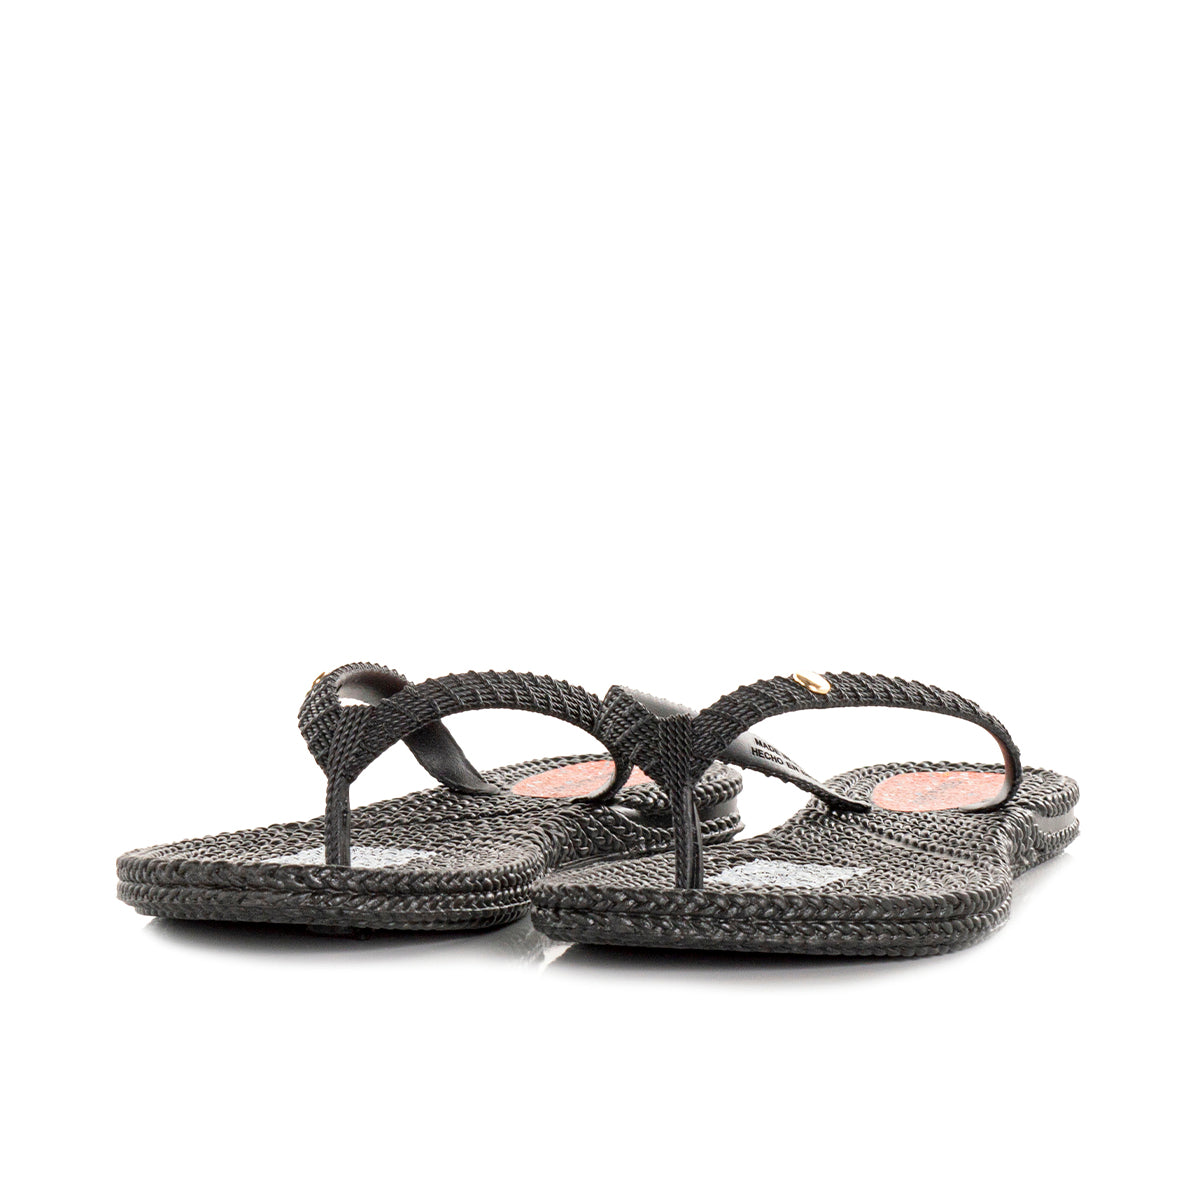 Sandalias color negro, sencillas con taches de mujer